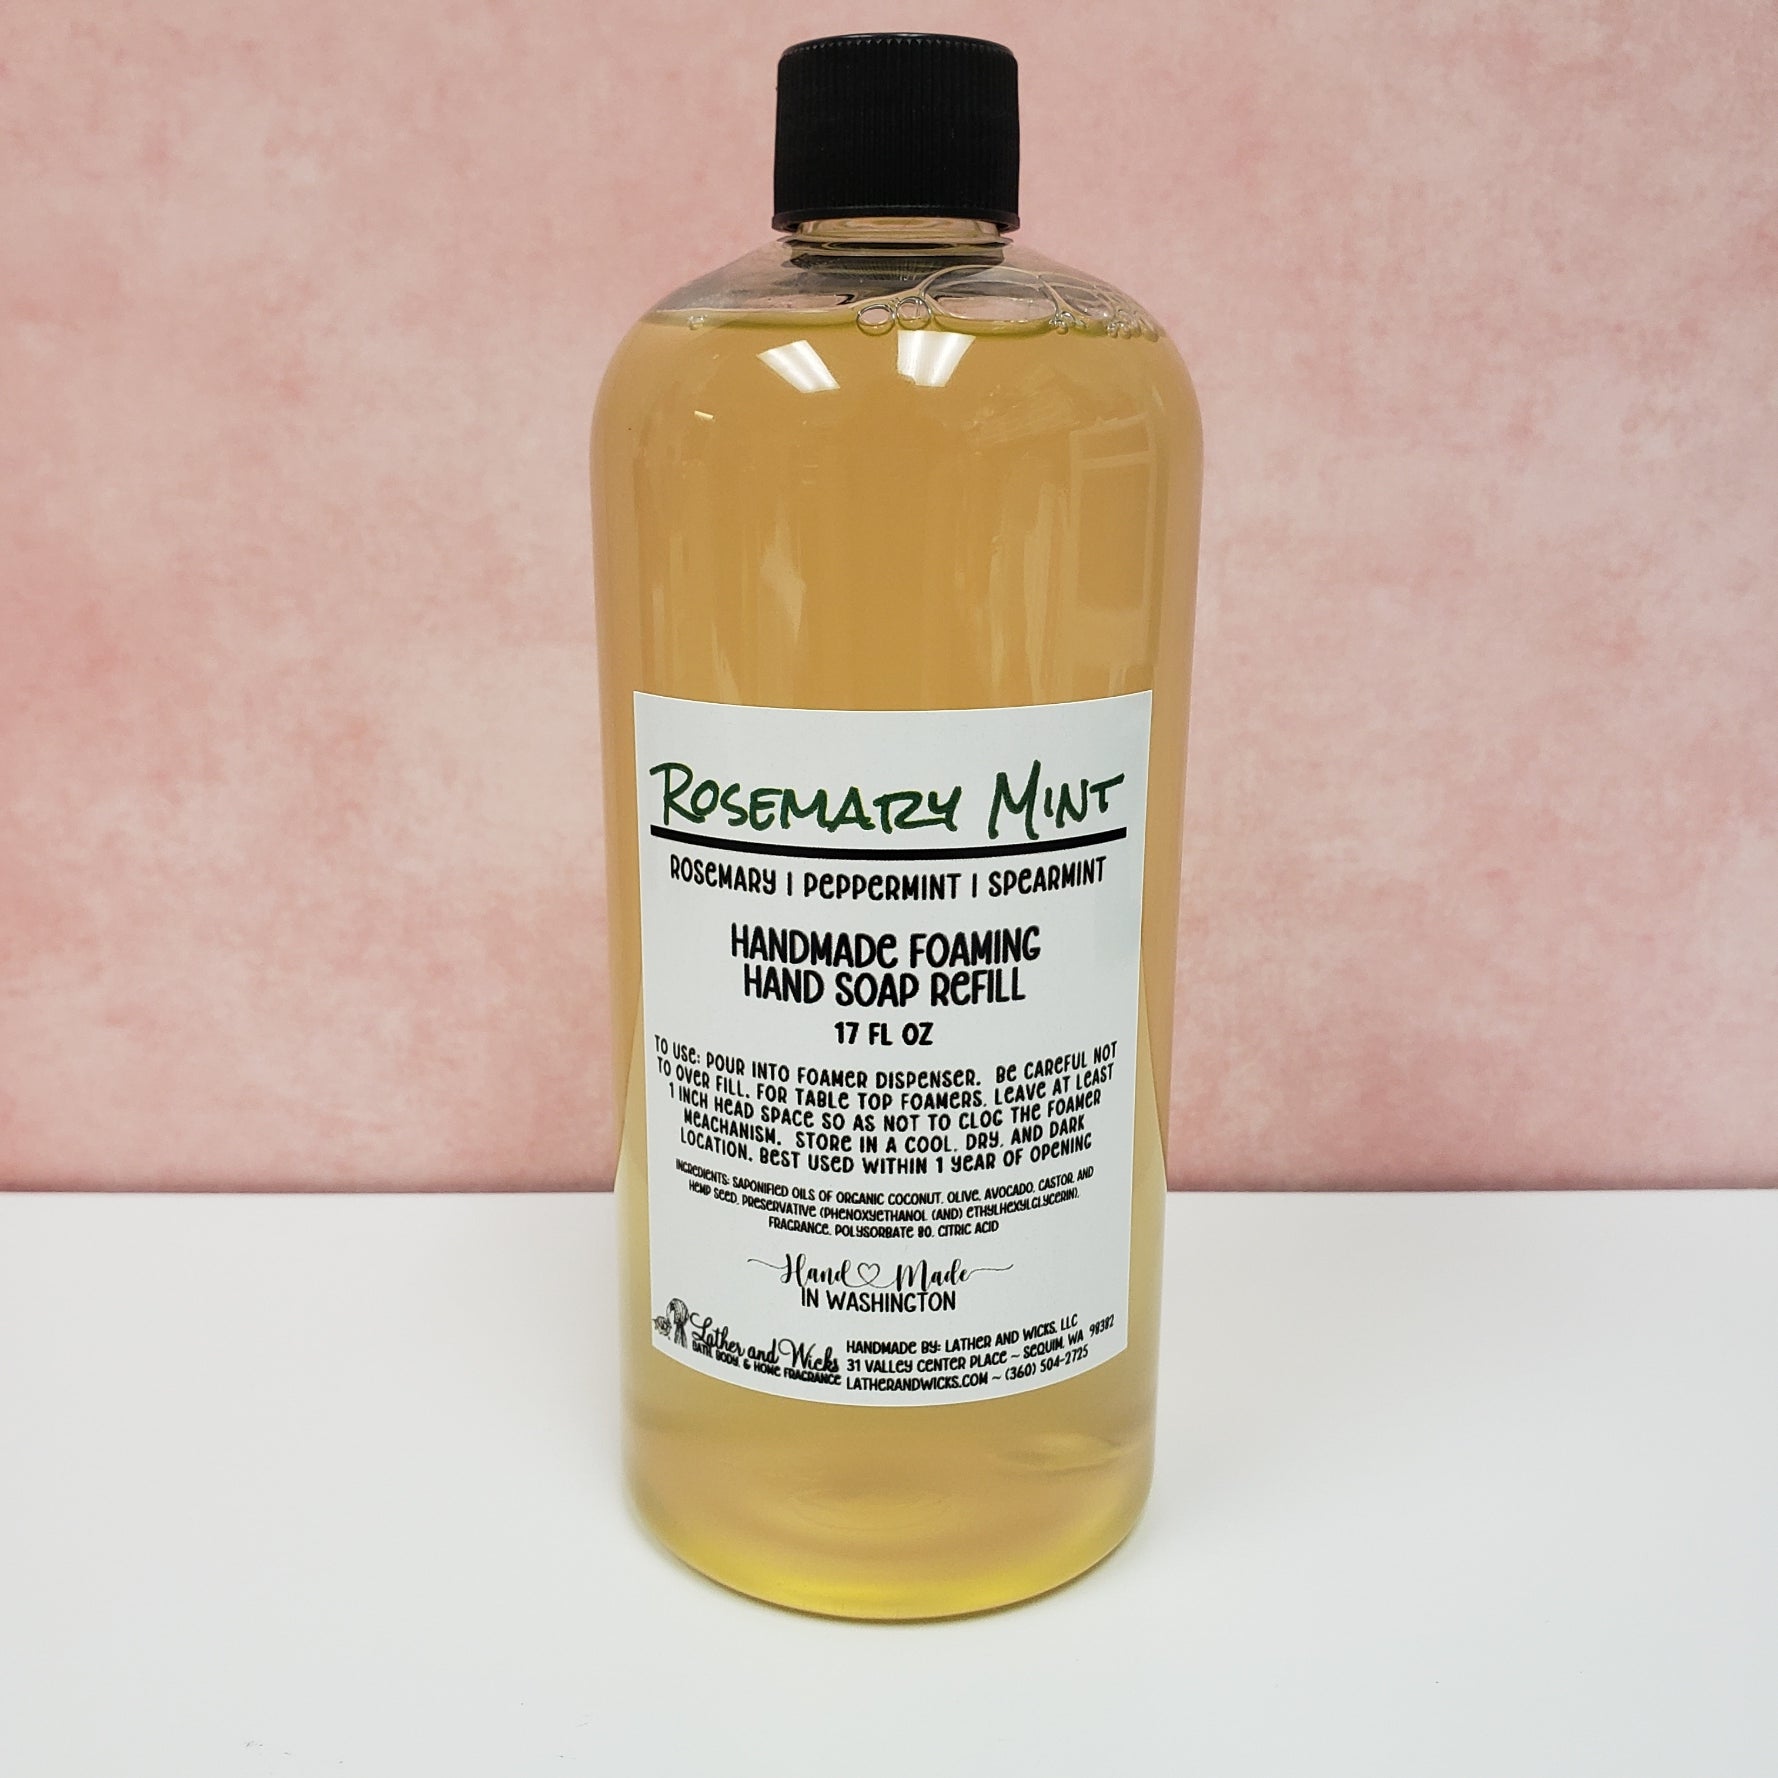 Rosemary Mint 17 fl oz foaming hand soap refill bottle.